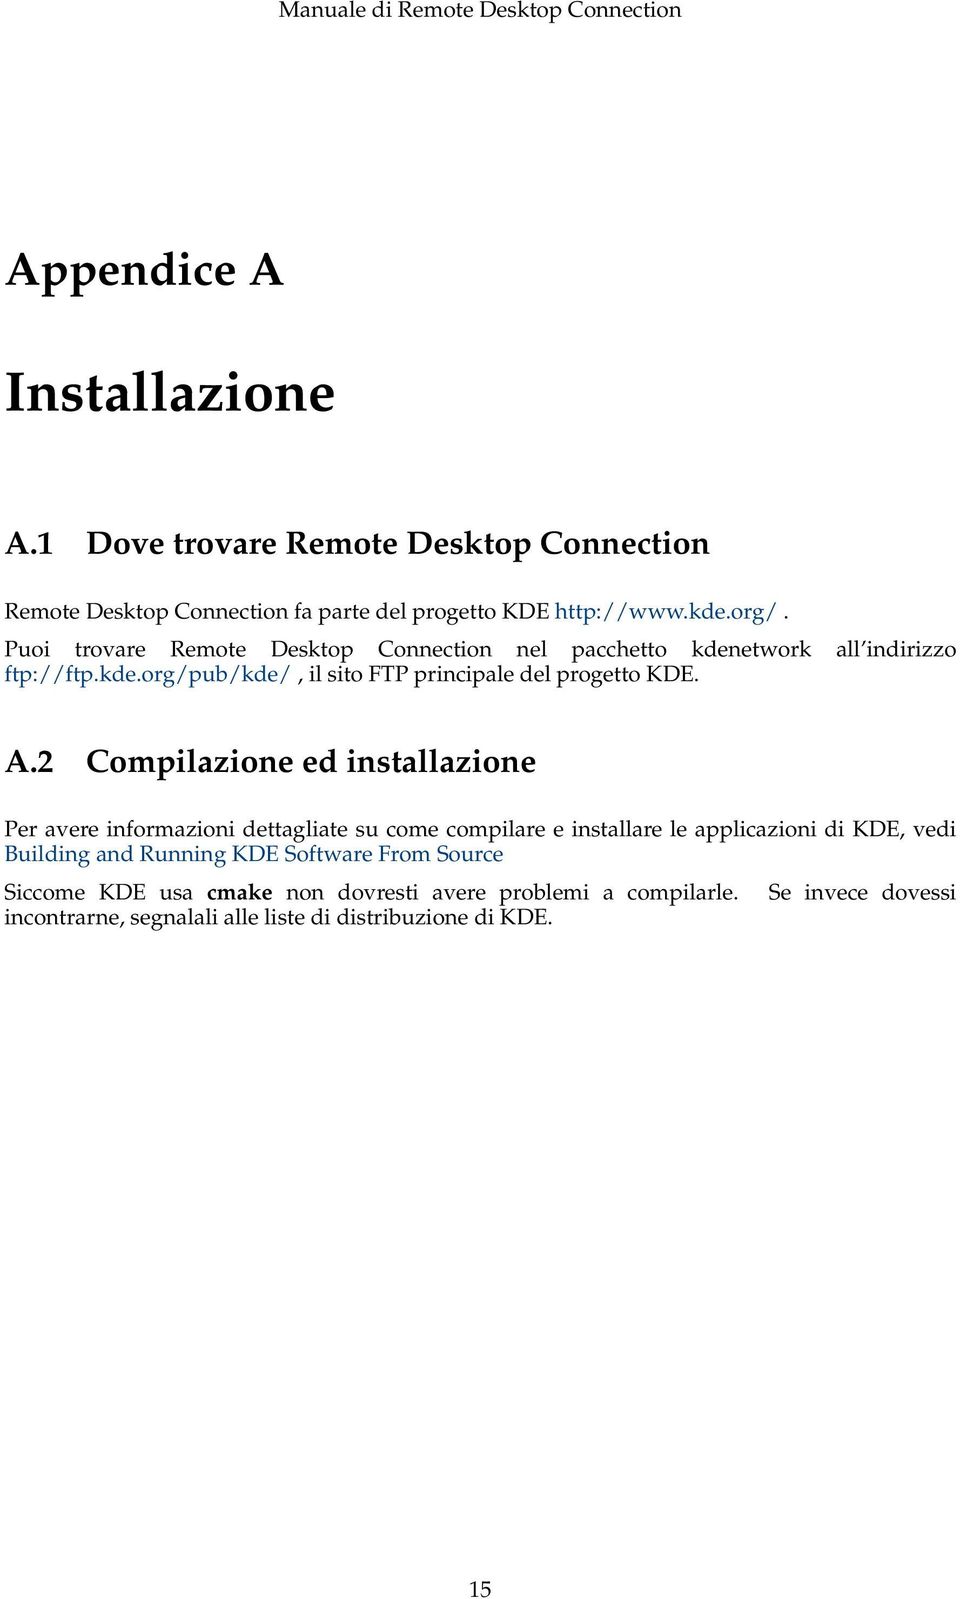 2 Compilazione ed installazione Per avere informazioni dettagliate su come compilare e installare le applicazioni di KDE, vedi Building and Running KDE